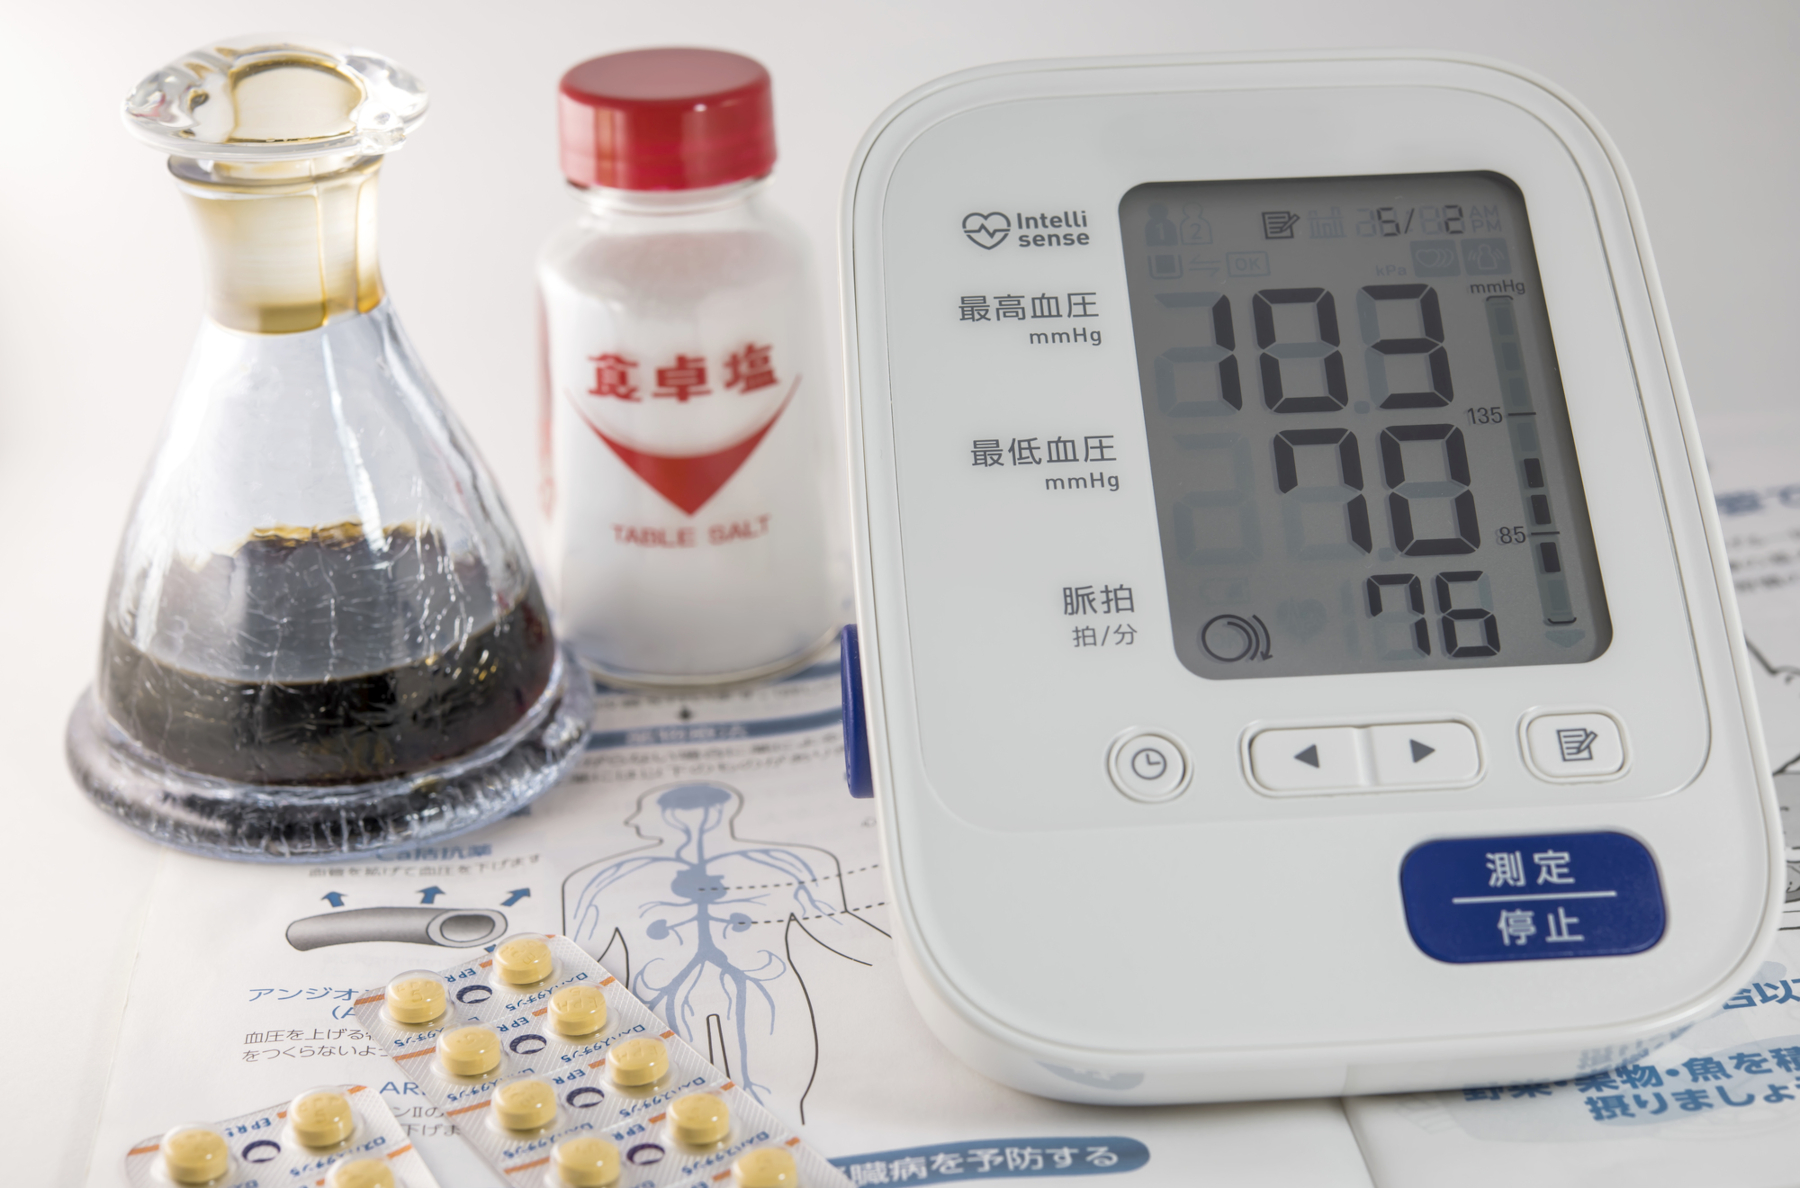 血圧計と高血圧の薬、しょうゆと塩